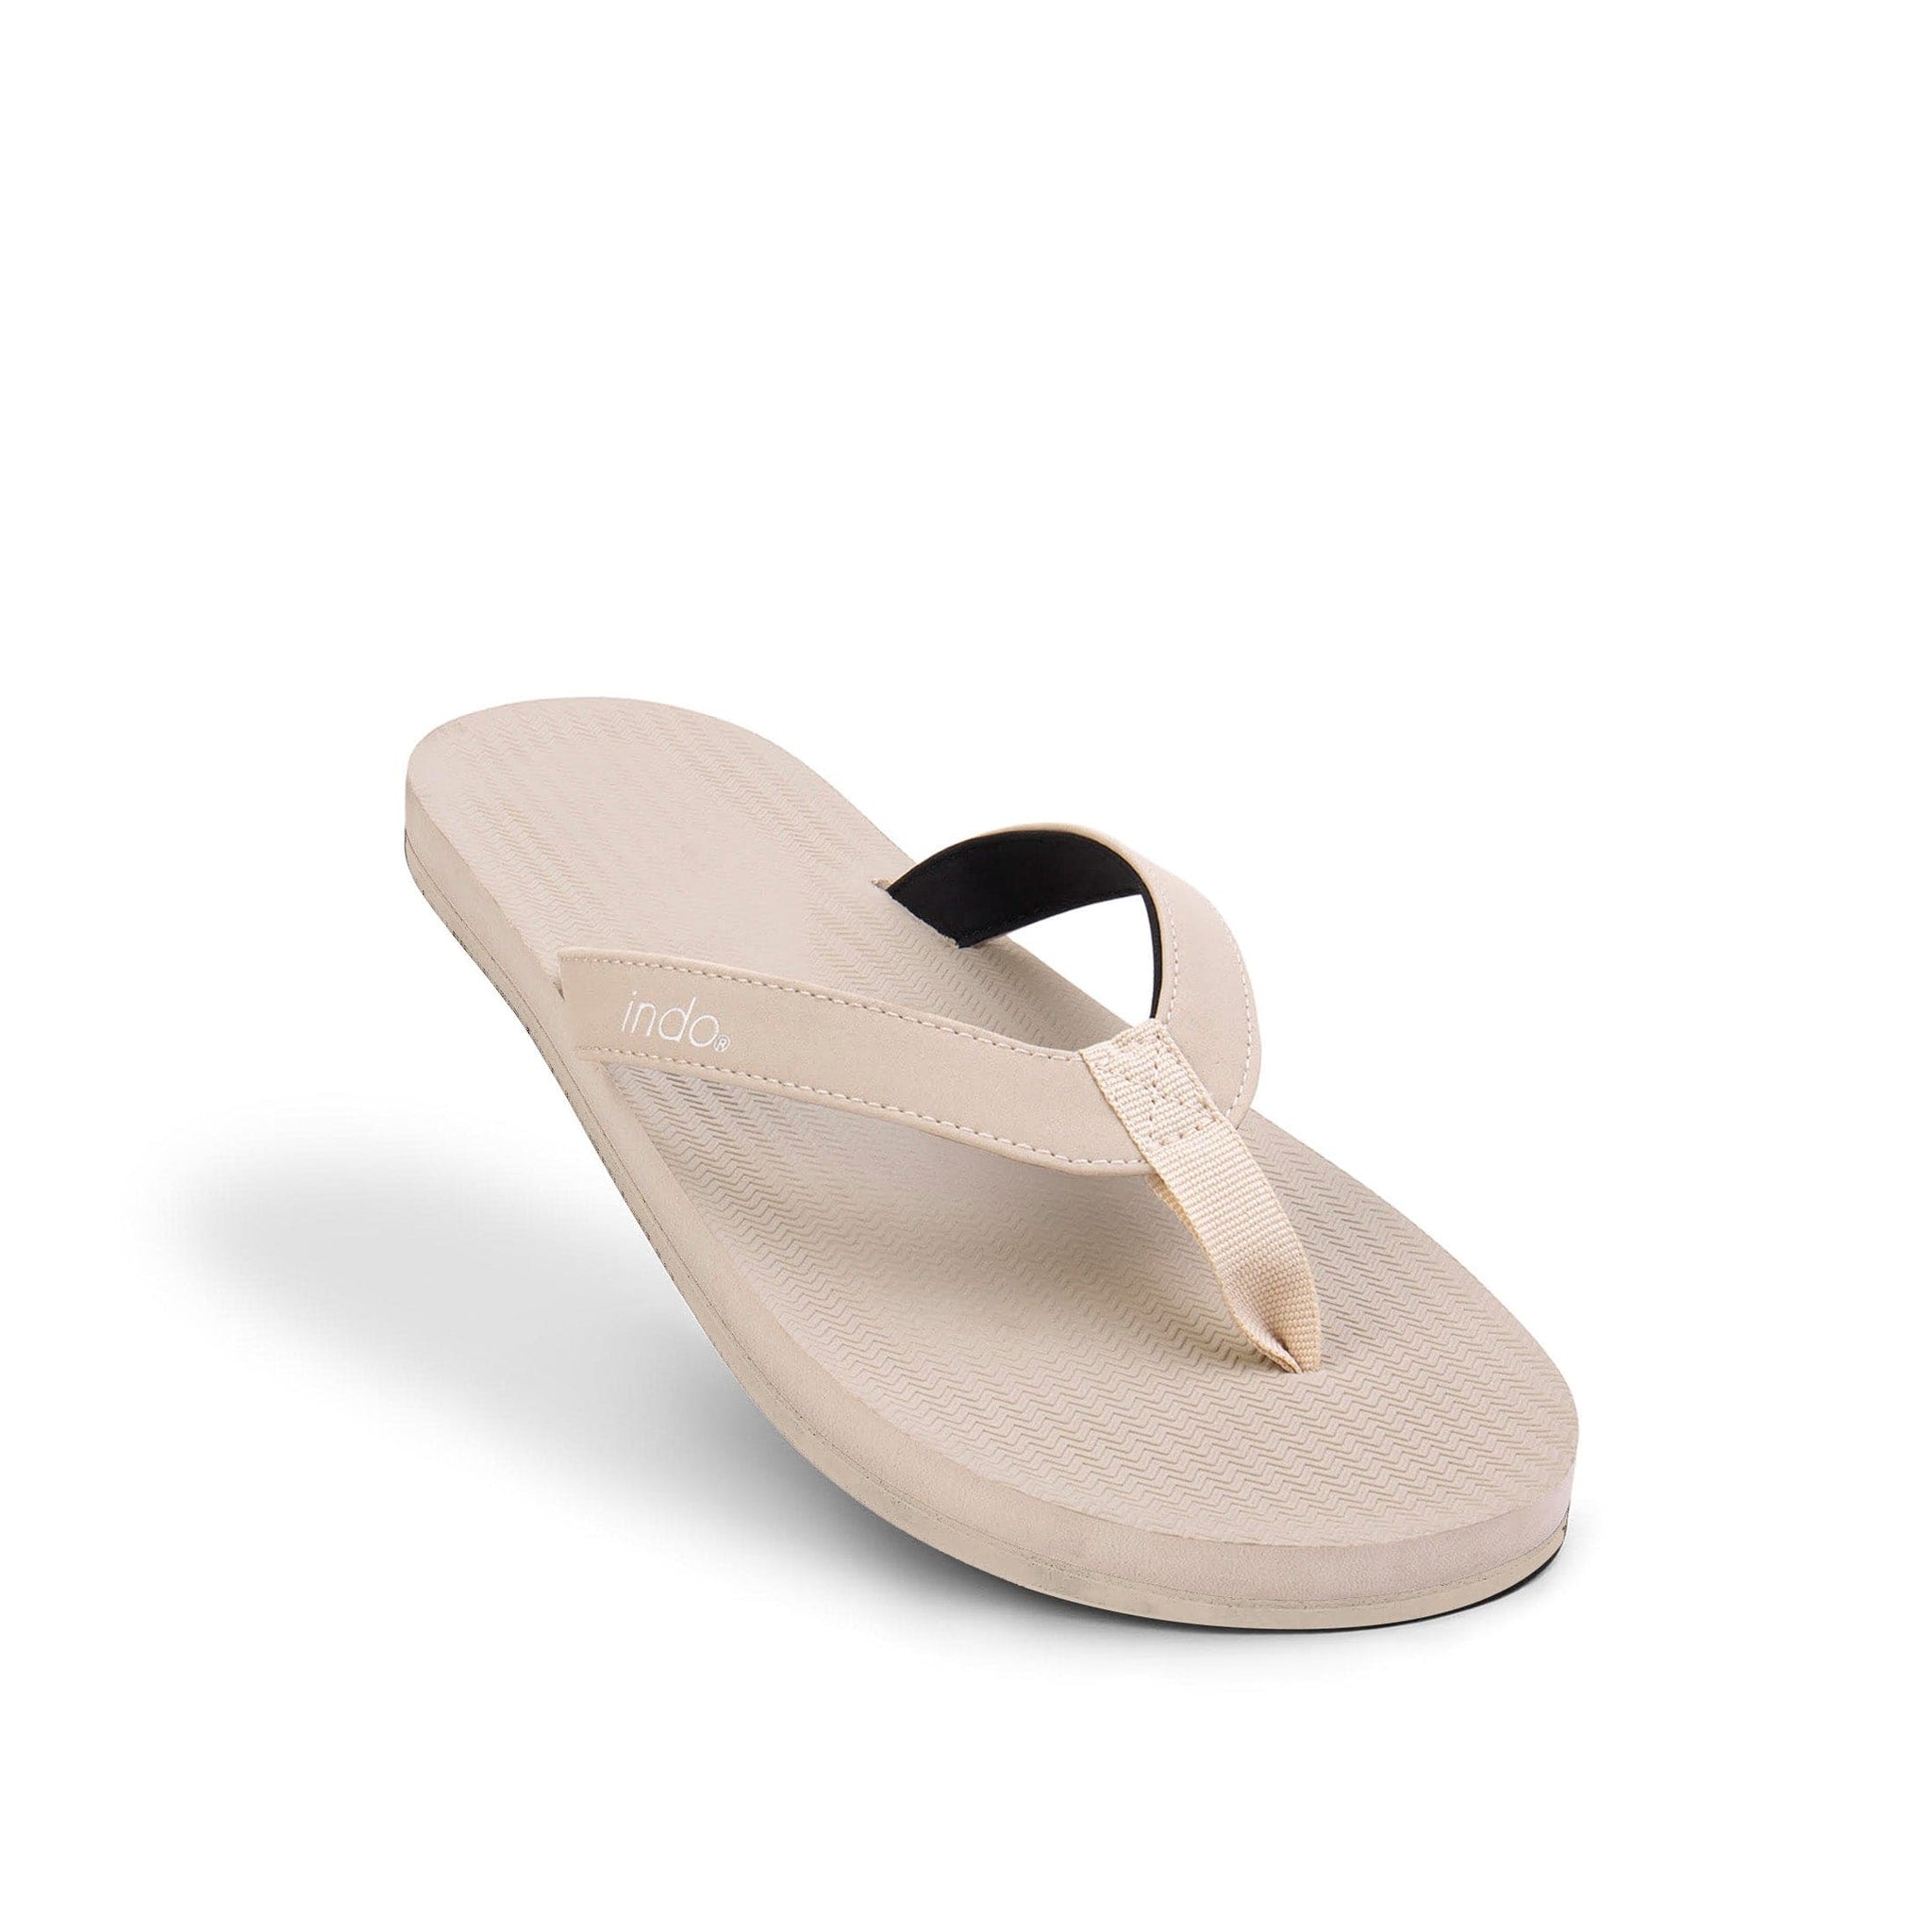 Men’s Flip Flops Sneaker Sole - Sea Salt/Sea Salt Sole by Indosole